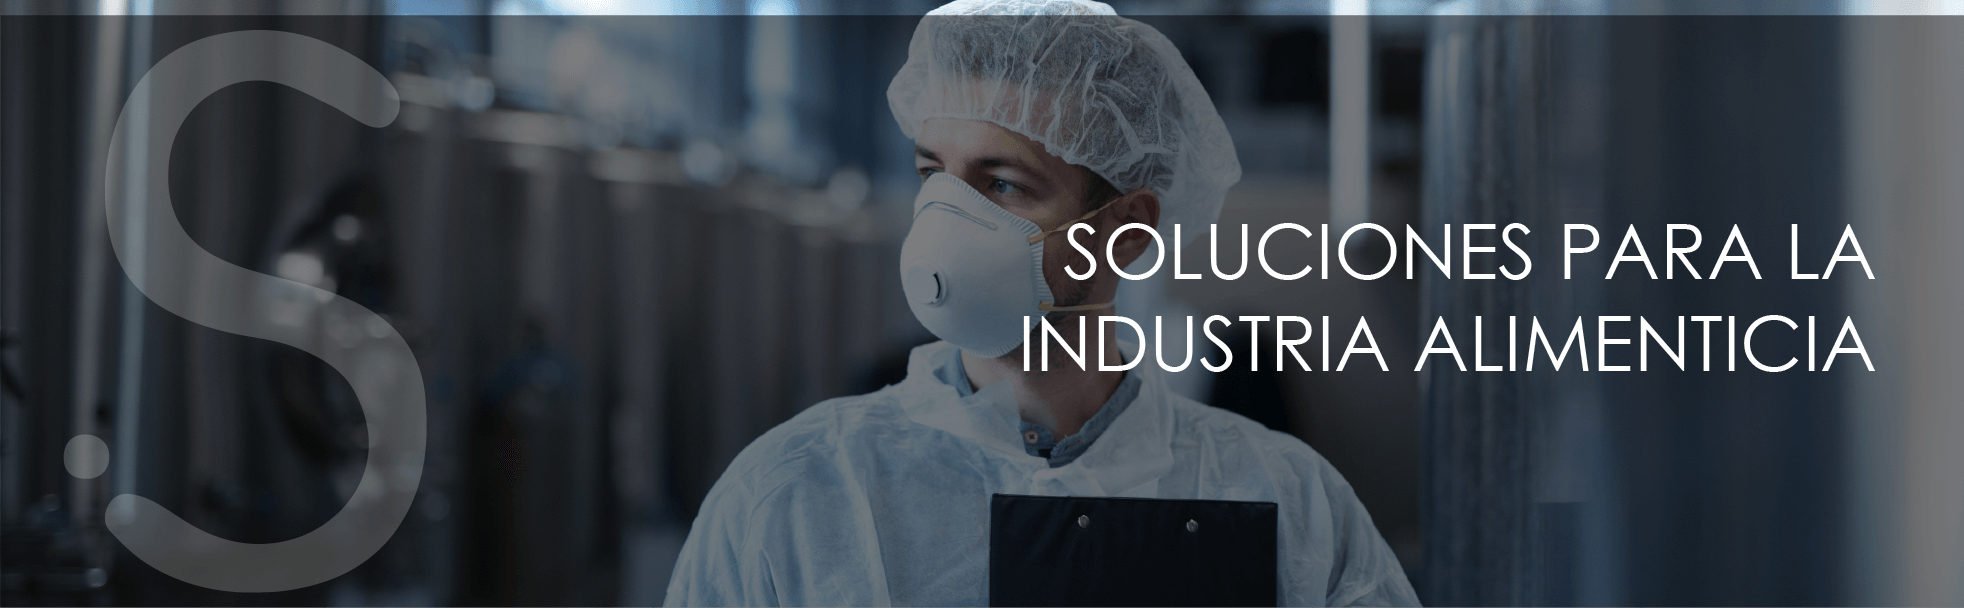 Soluciones industriales, lideres en soluciones para industria alimentaria